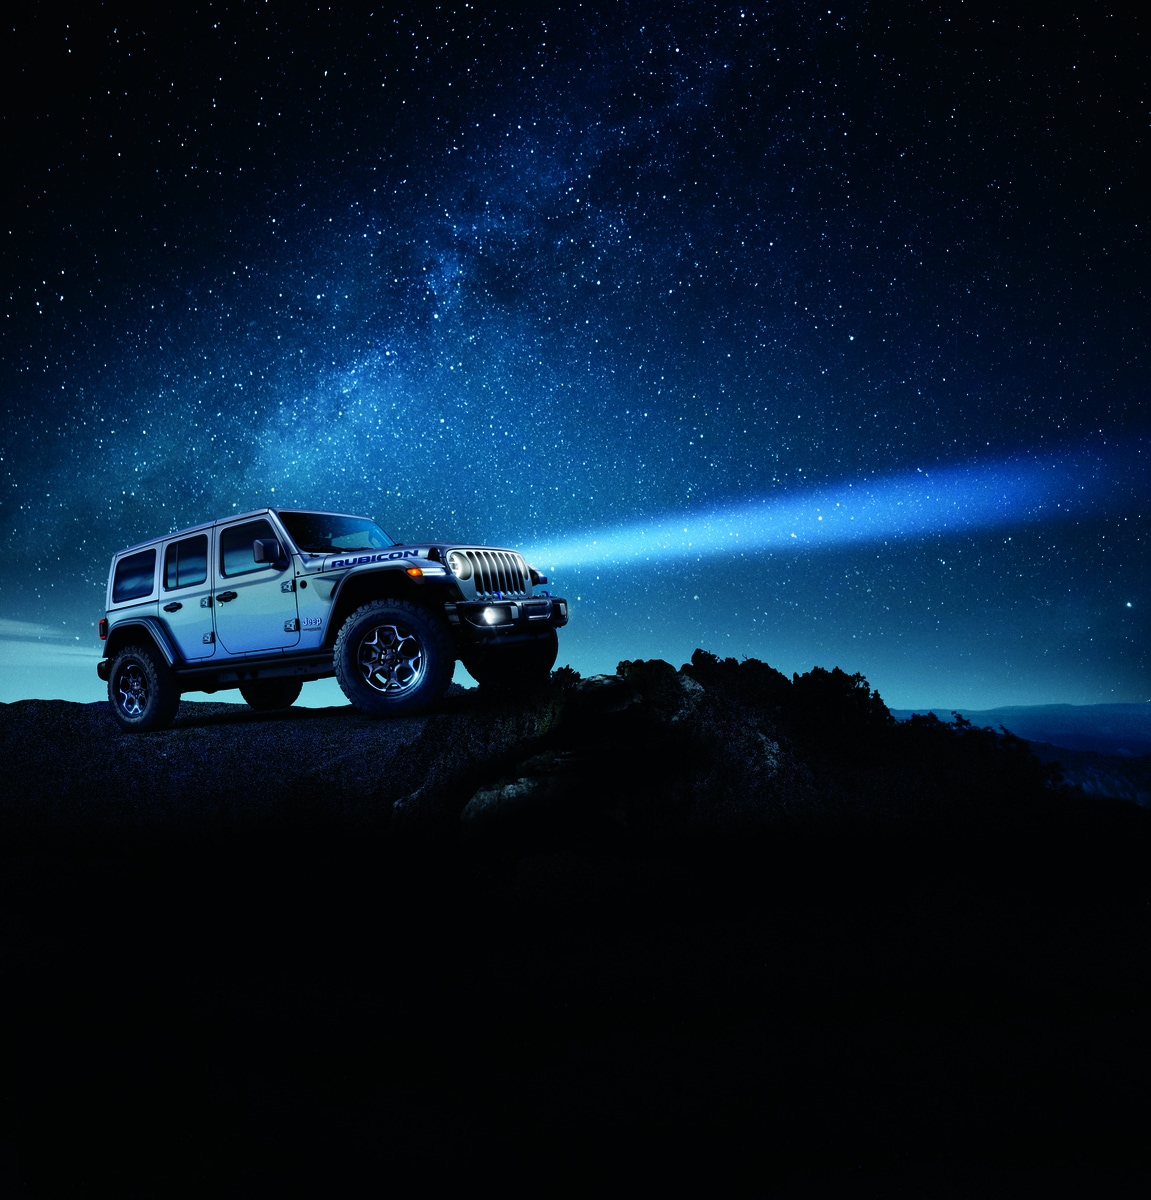 silver Jeep Wrangler SUV parked on a rocky ledge, under a night sky